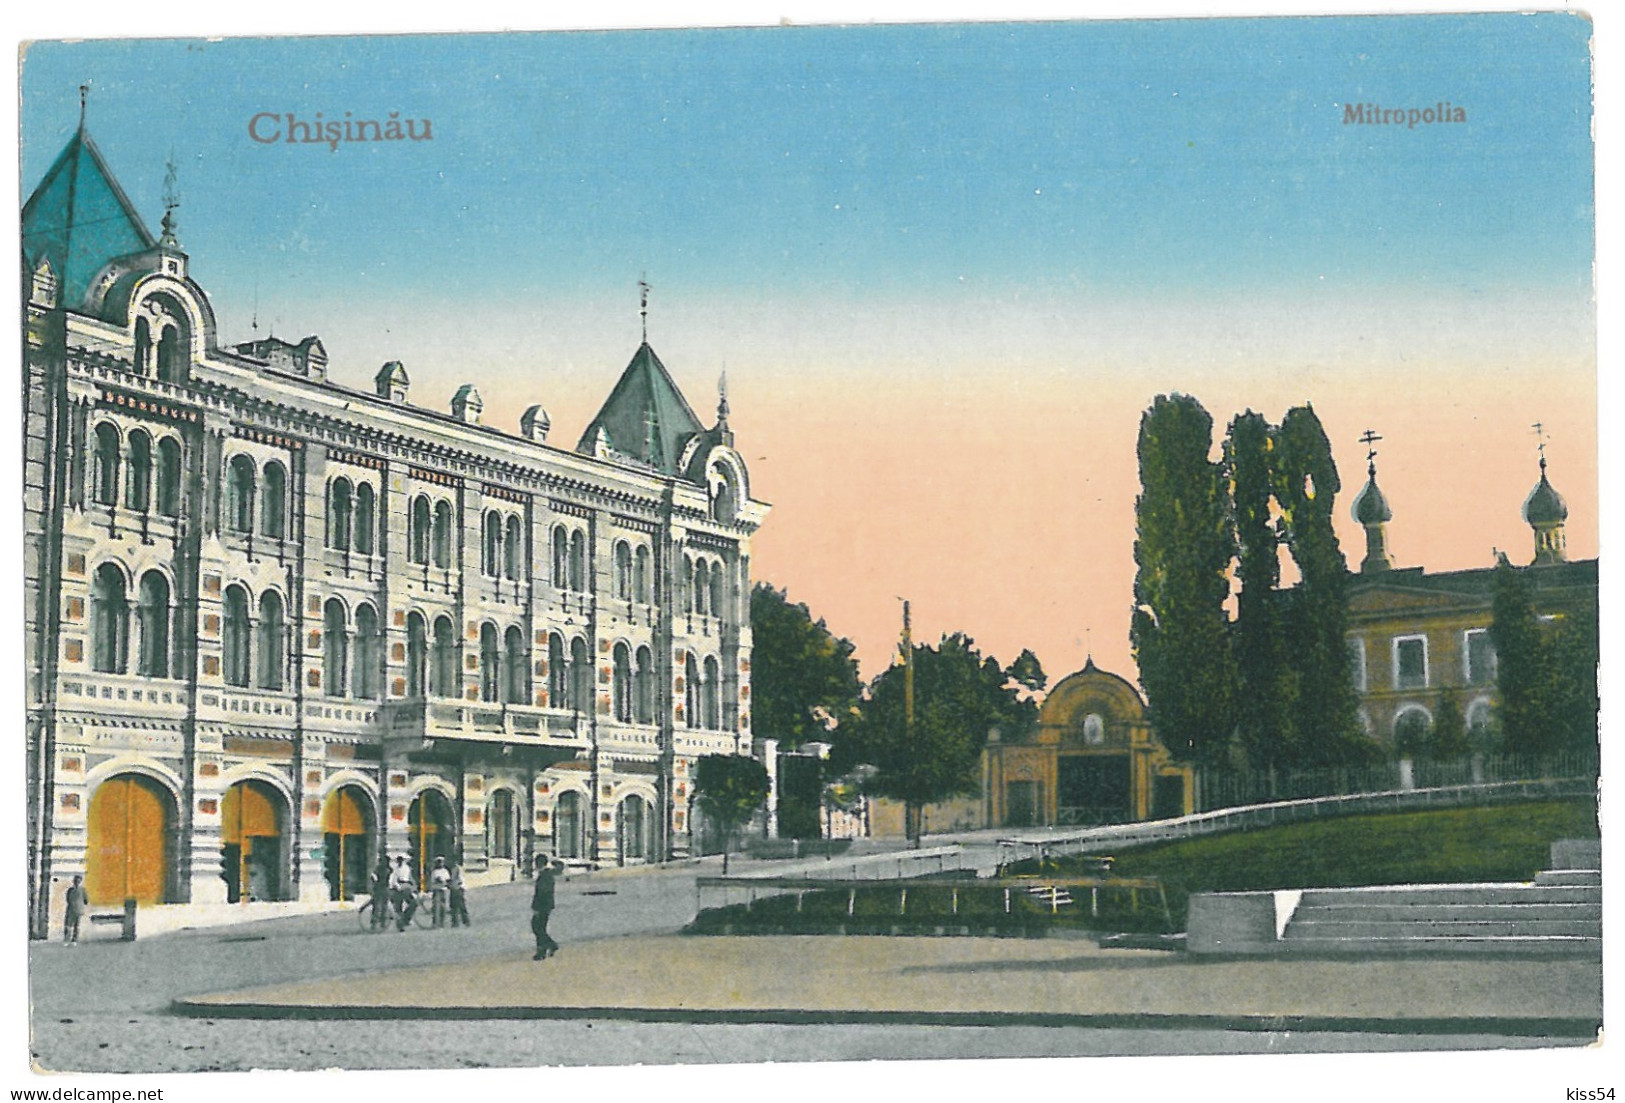 MOL 4 - 13973 CHISINAU Moldova, Mitropolia - Old Postcard - Used - Moldawien (Moldova)